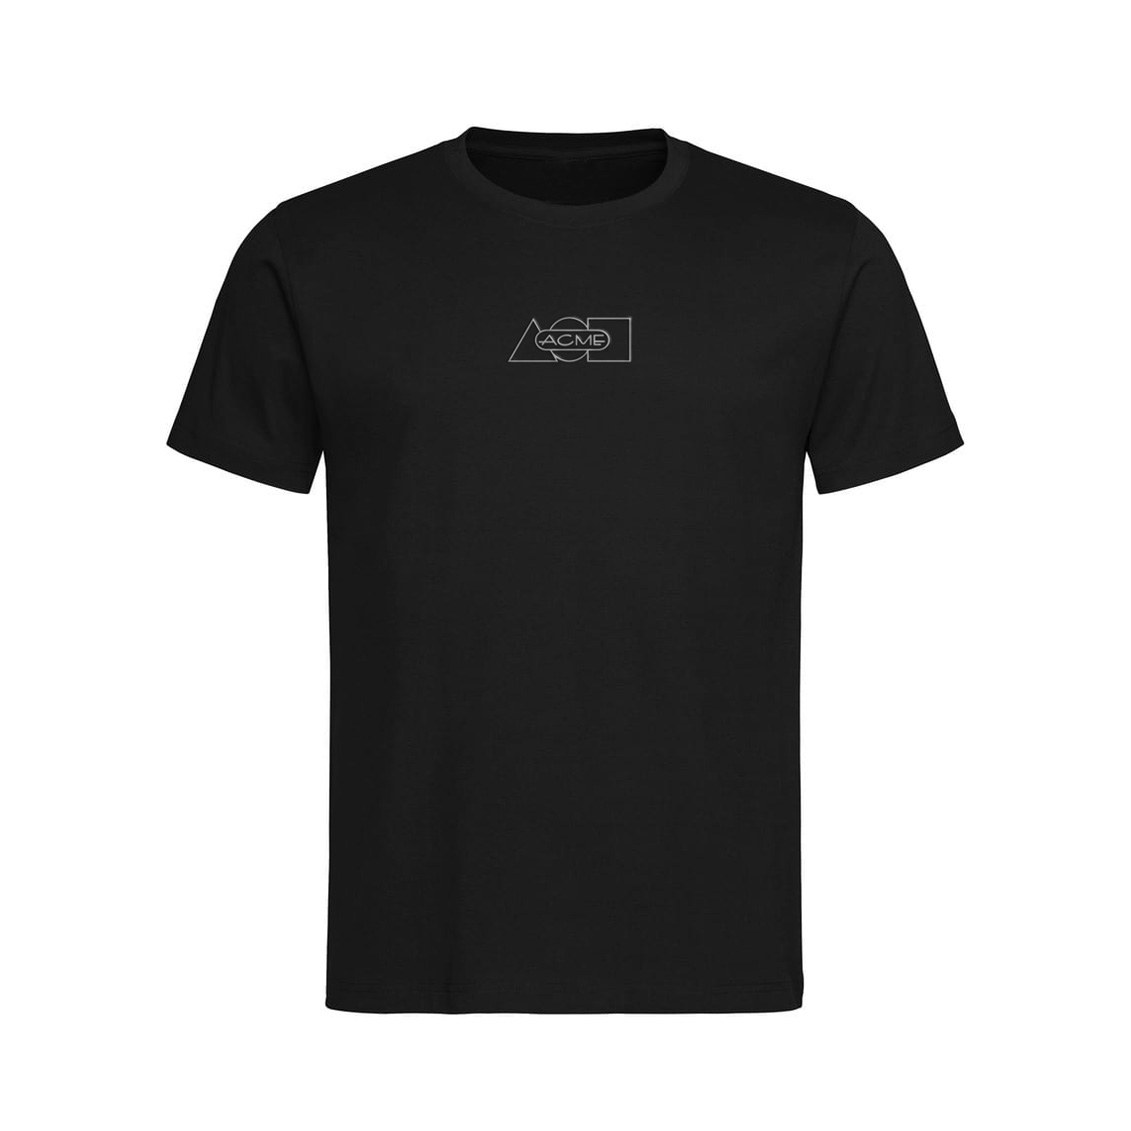 Shop ACME BLACK T-Shirt - S by ACME Studio (#ACME TSHIRT SML) on ACME ...